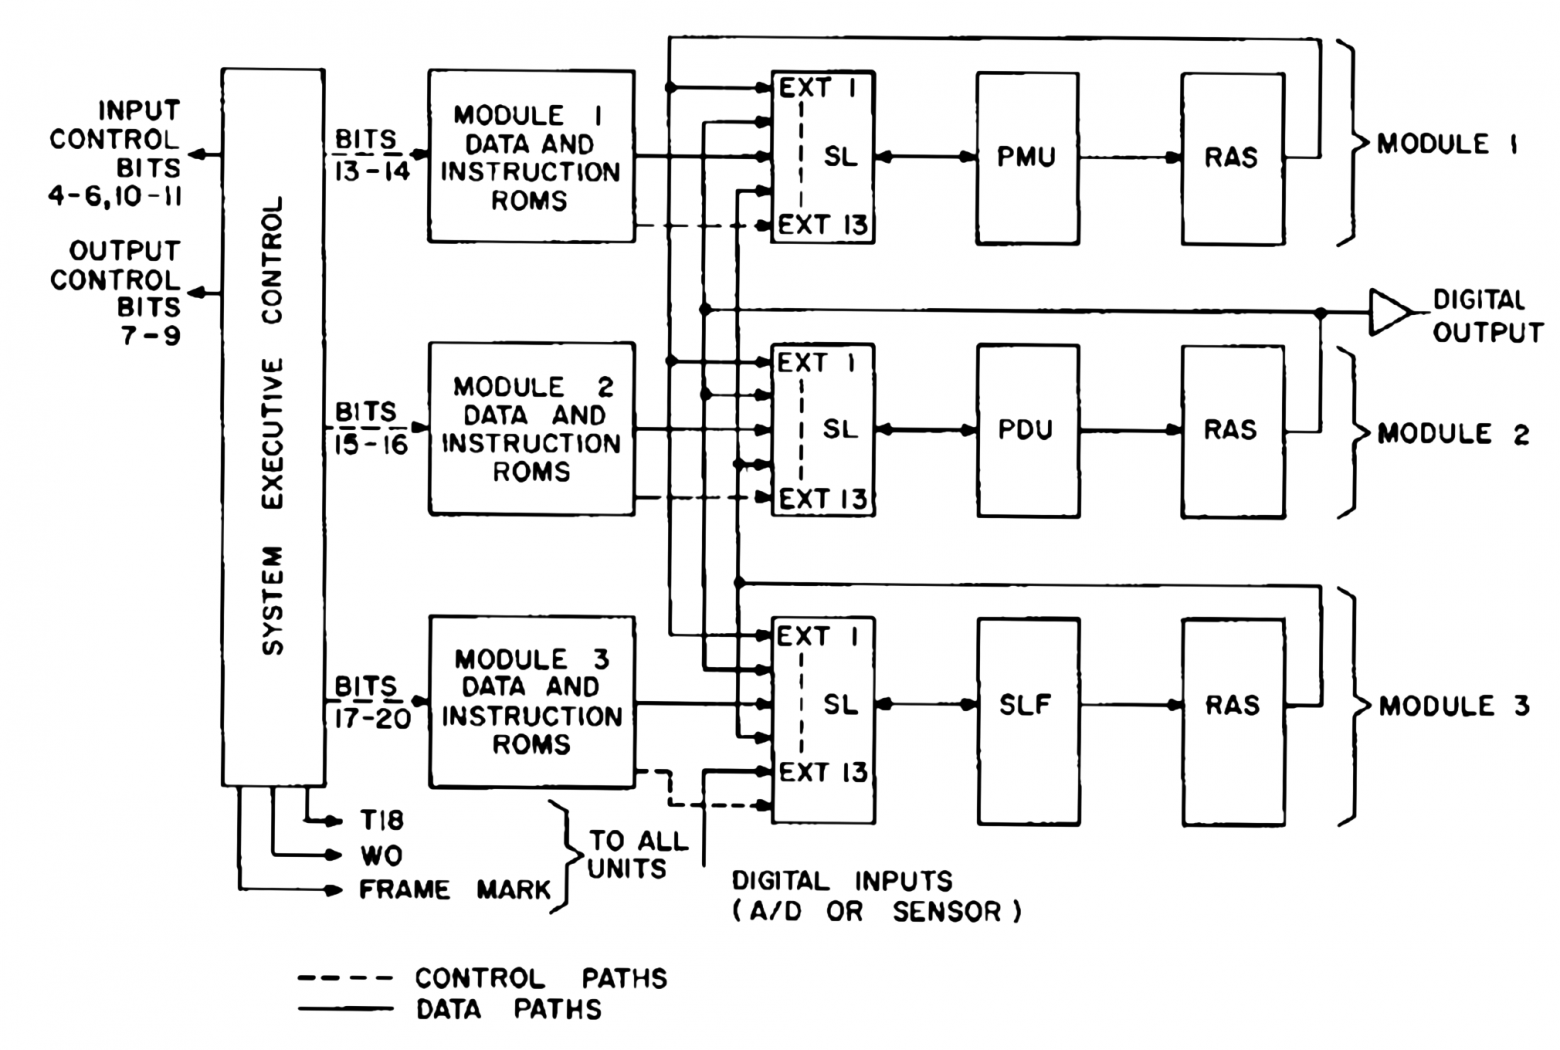 Блок-схема F14A CADC. Модуль 1 выполняет умножение, модуль 2 выполняет деление, а модуль 3 выполняет специальные логические функции.